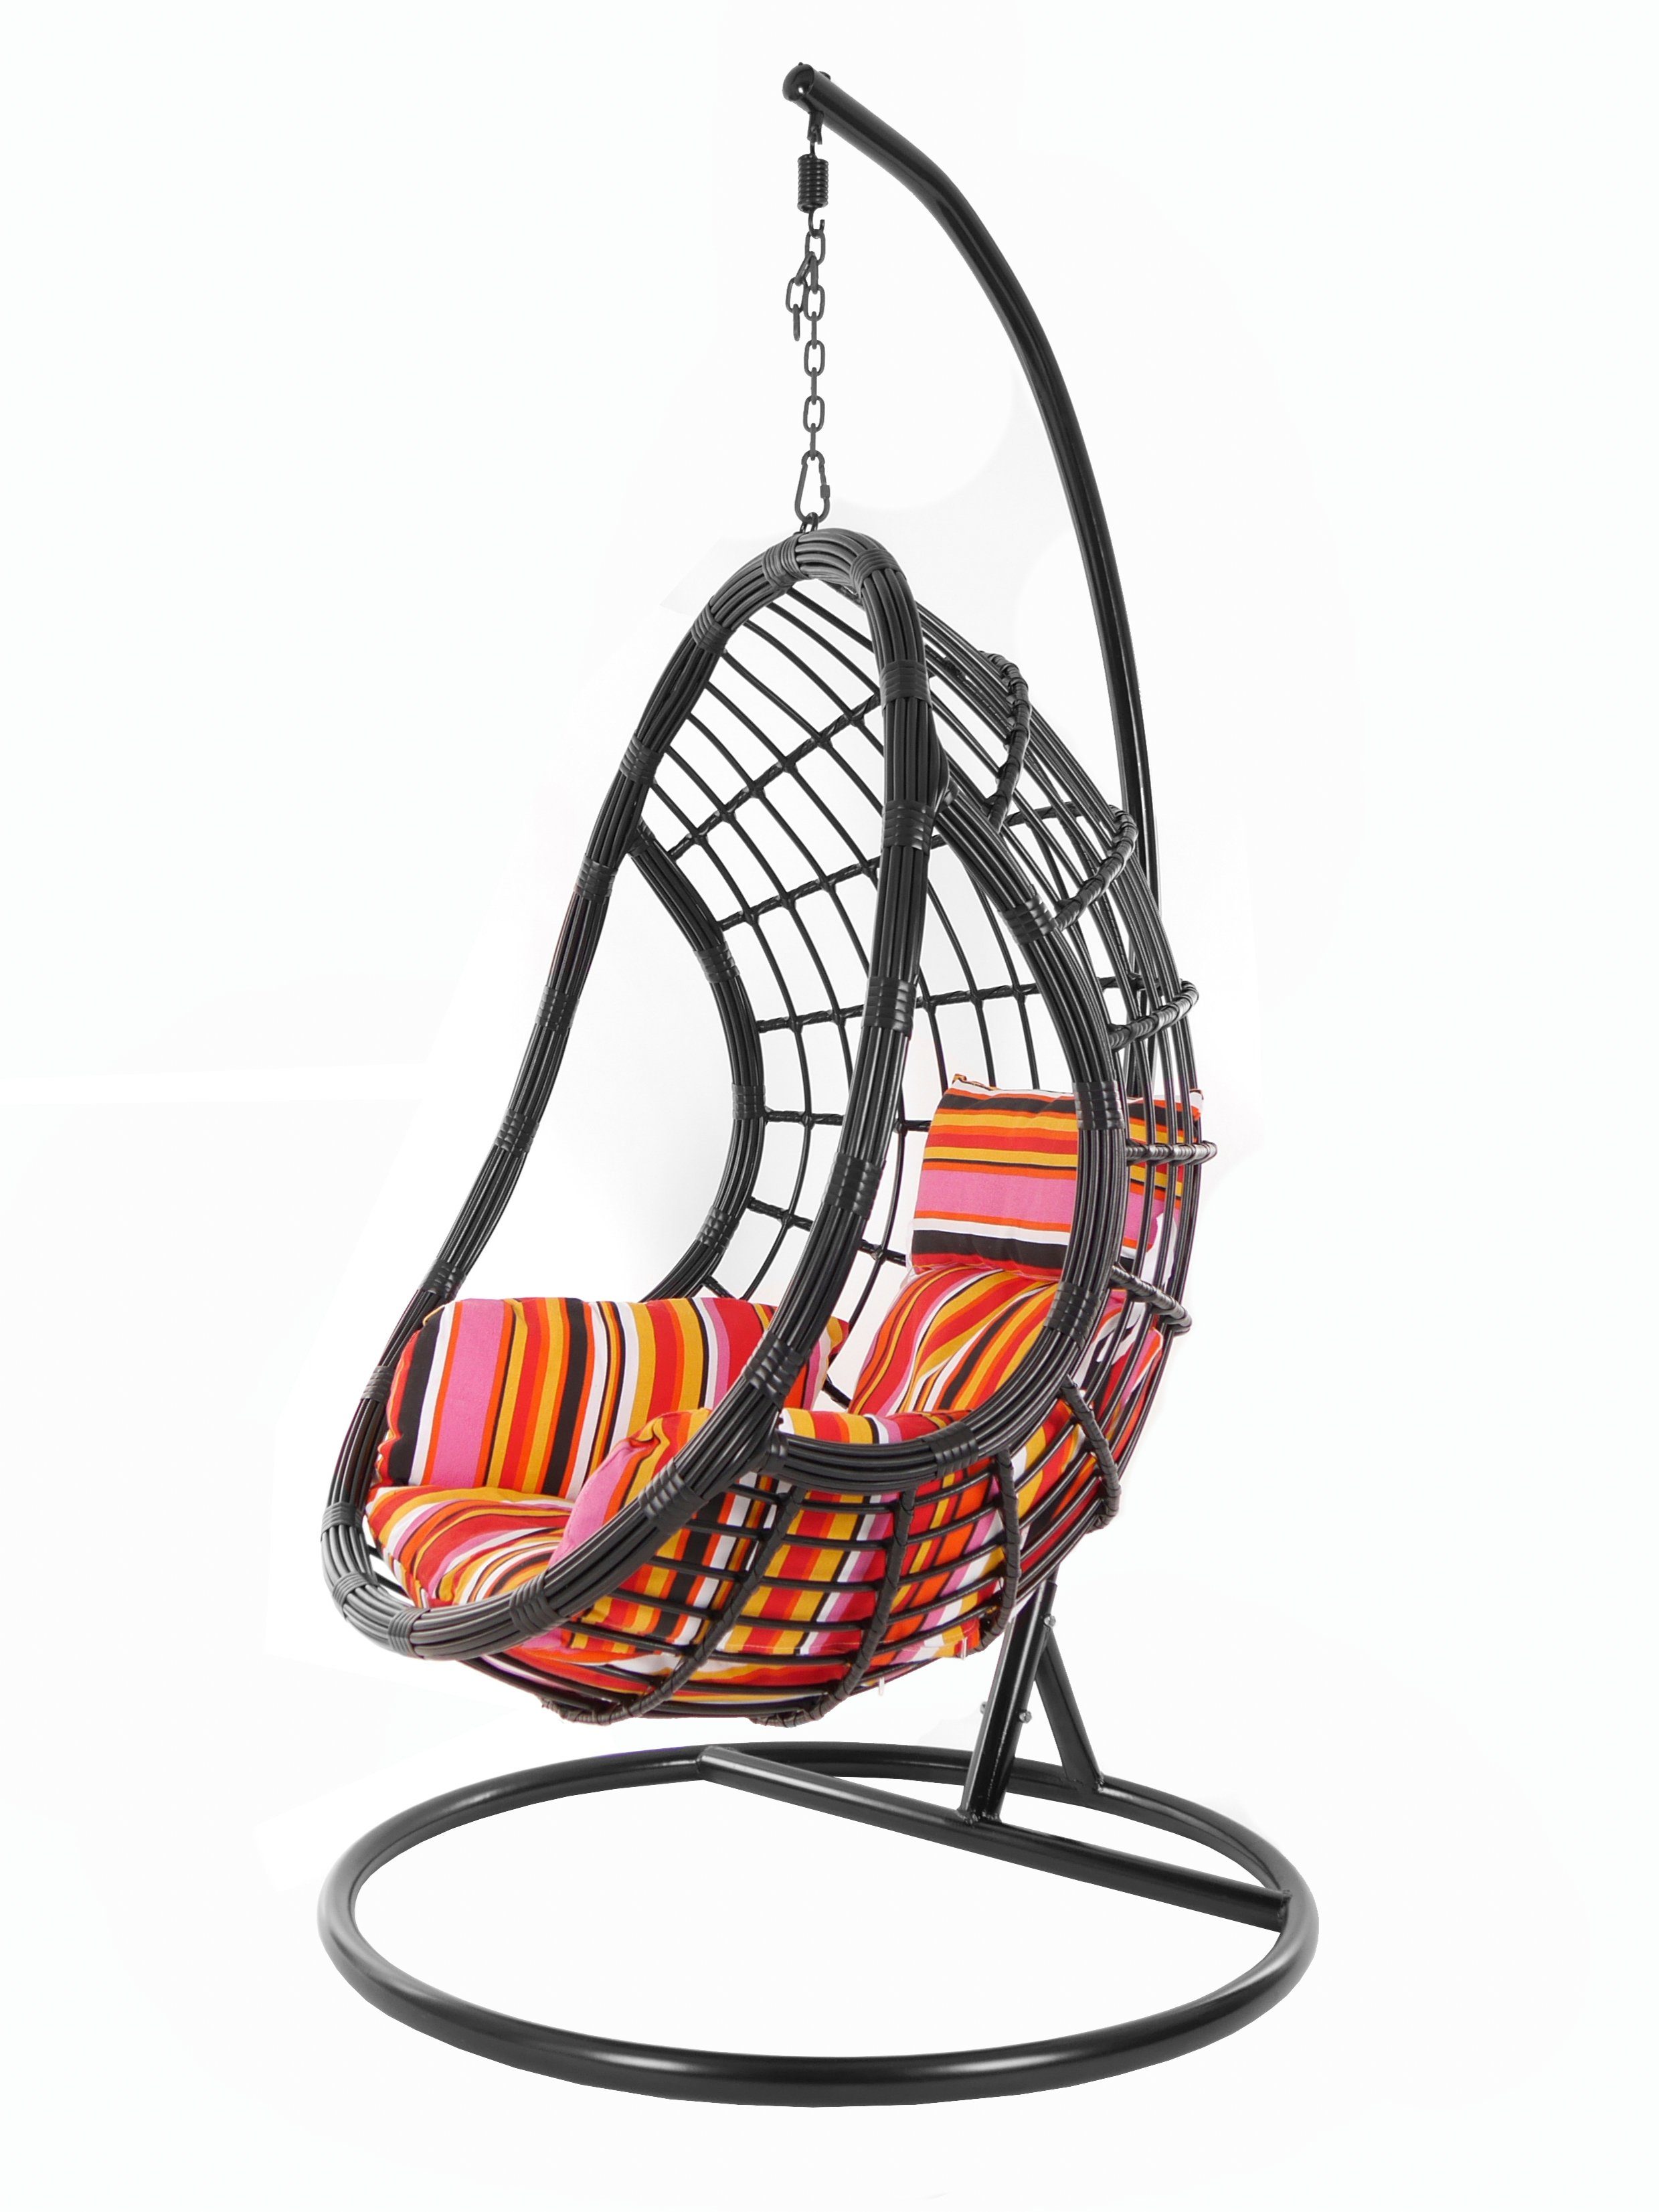 PALMANOVA Loungemöbel, und Schwarz, Kissen, gestreift lollipop) Gestell Swing Muster Hängesessel mit Schwebesessel, KIDEO Hängesessel Chair, bunt (3450 black,